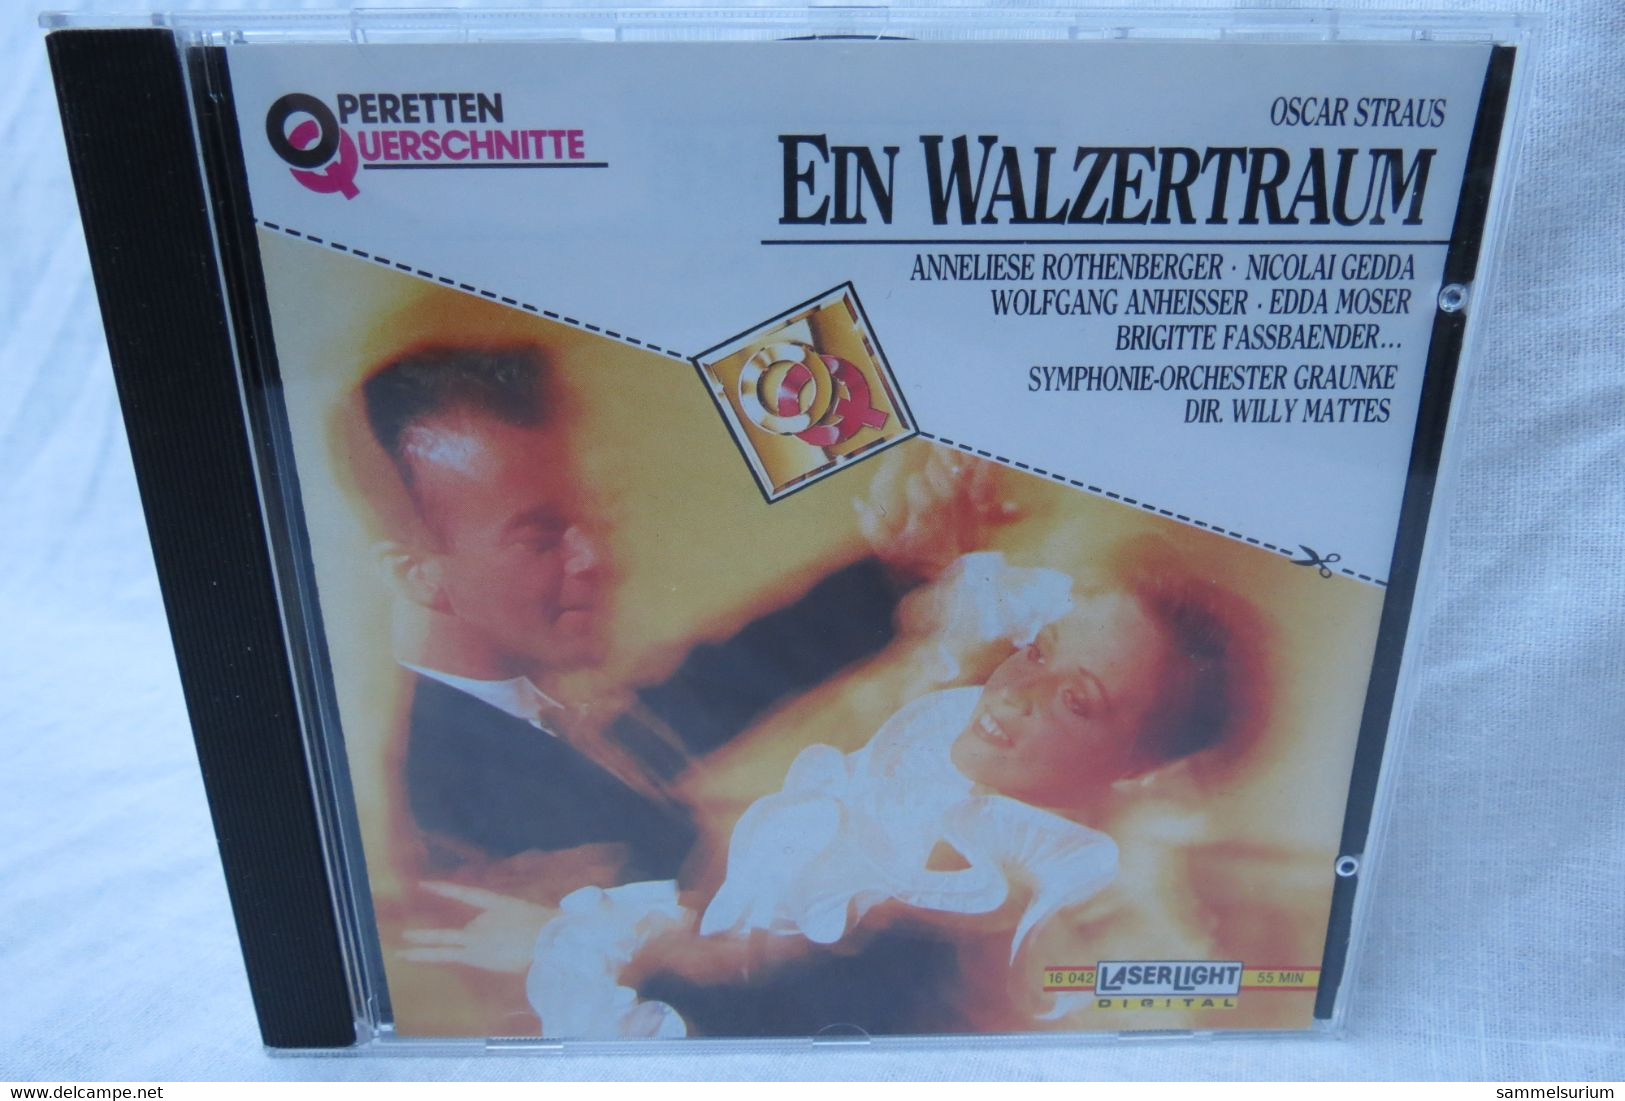 CD "Oscar Straus" Ein Walzertraum Aus Der Reihe Operetten Querschnitte - Opera / Operette